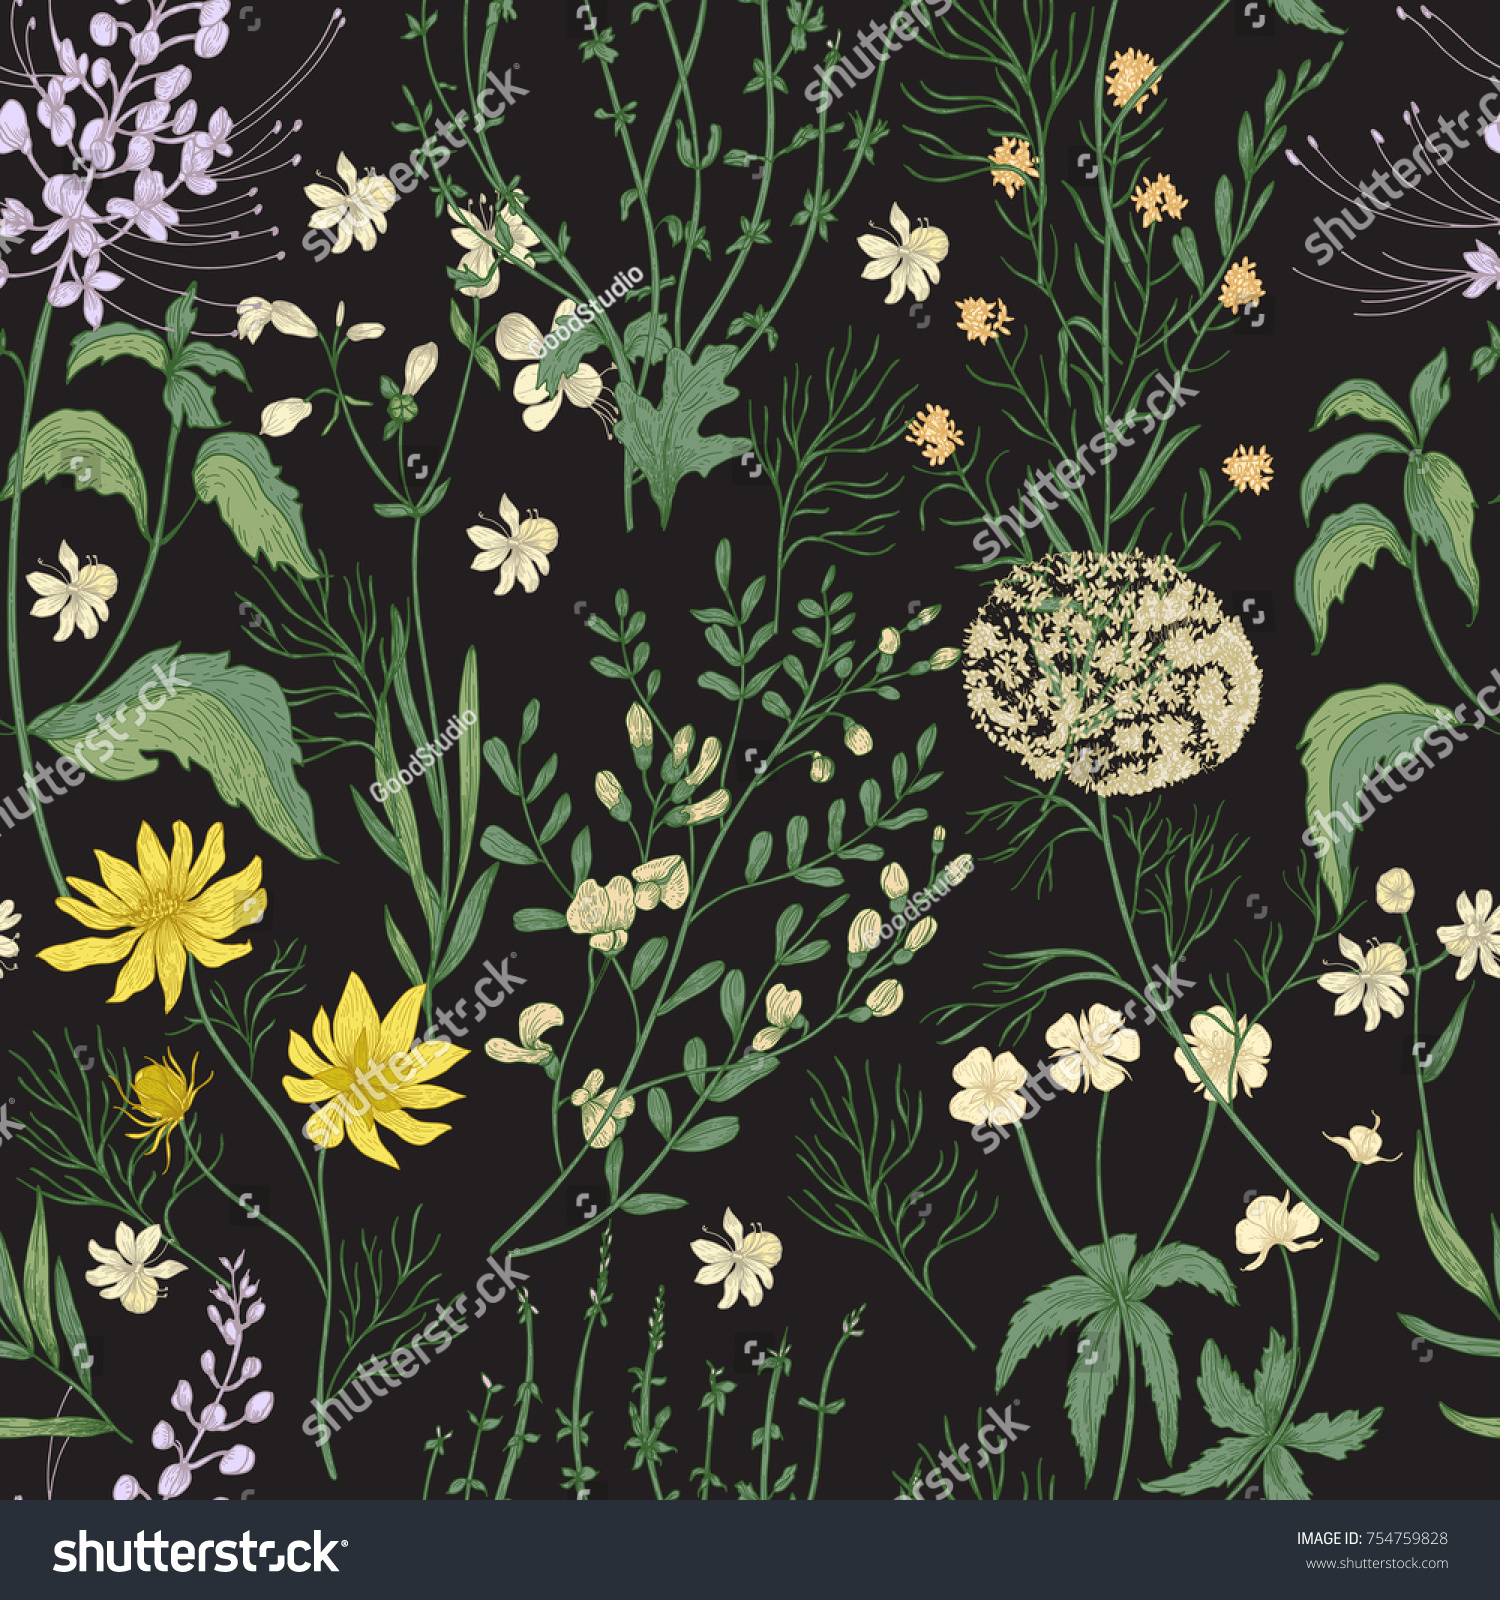 黒い背景に華やかな手描きの野生の花と優美な花のシームレスな柄 優しい花のハーブと草本 美しいアンティークスタイルの植物ベクターイラスト のベクター画像素材 ロイヤリティフリー